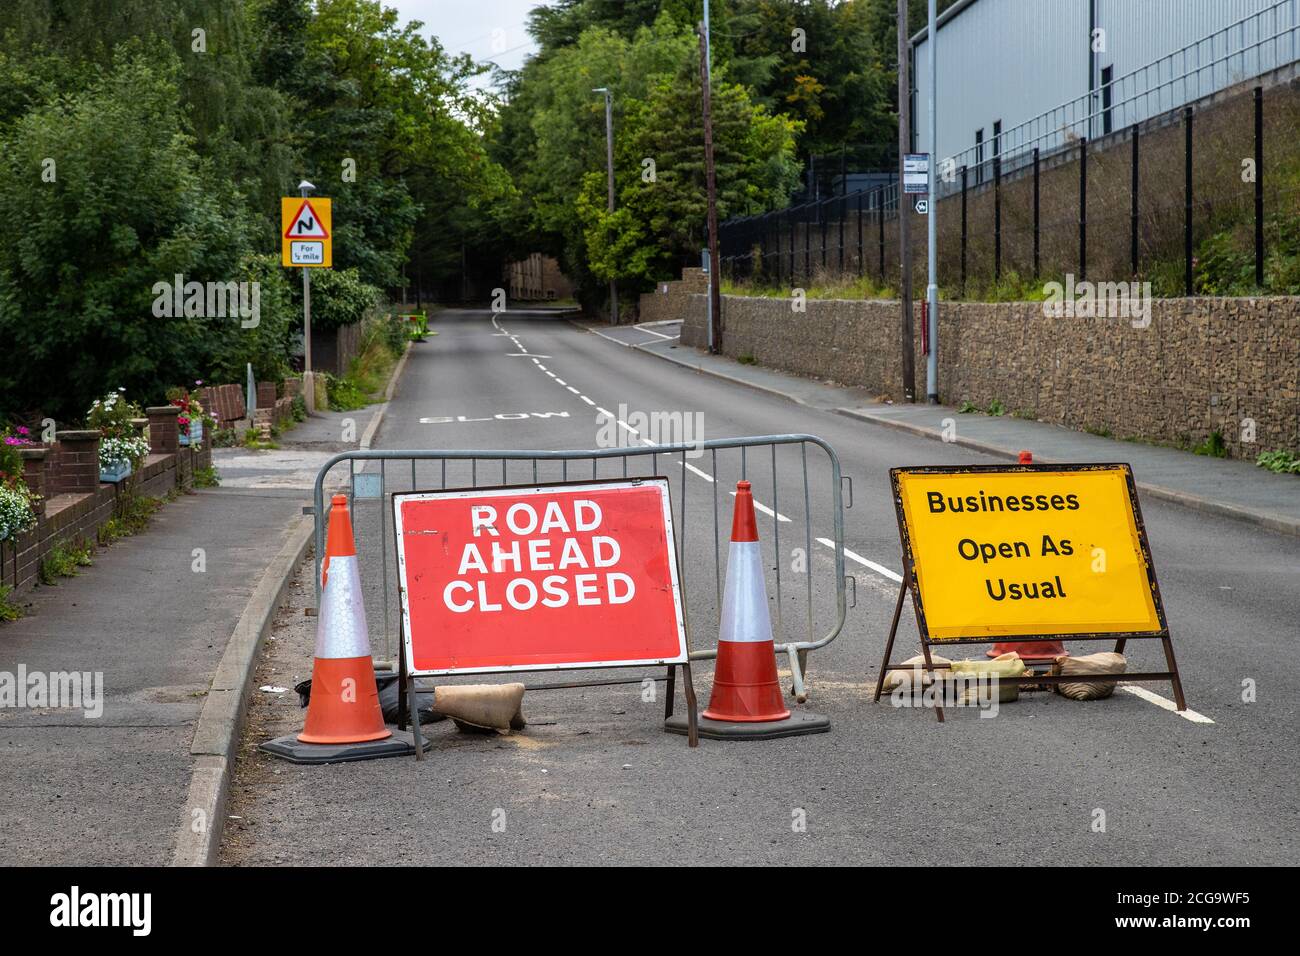 Las señales de la carretera a Eland, West Yorkshire aconsejando que la calle que está delante está cerrada al tráfico, pero las empresas están abiertas como de costumbre Foto de stock